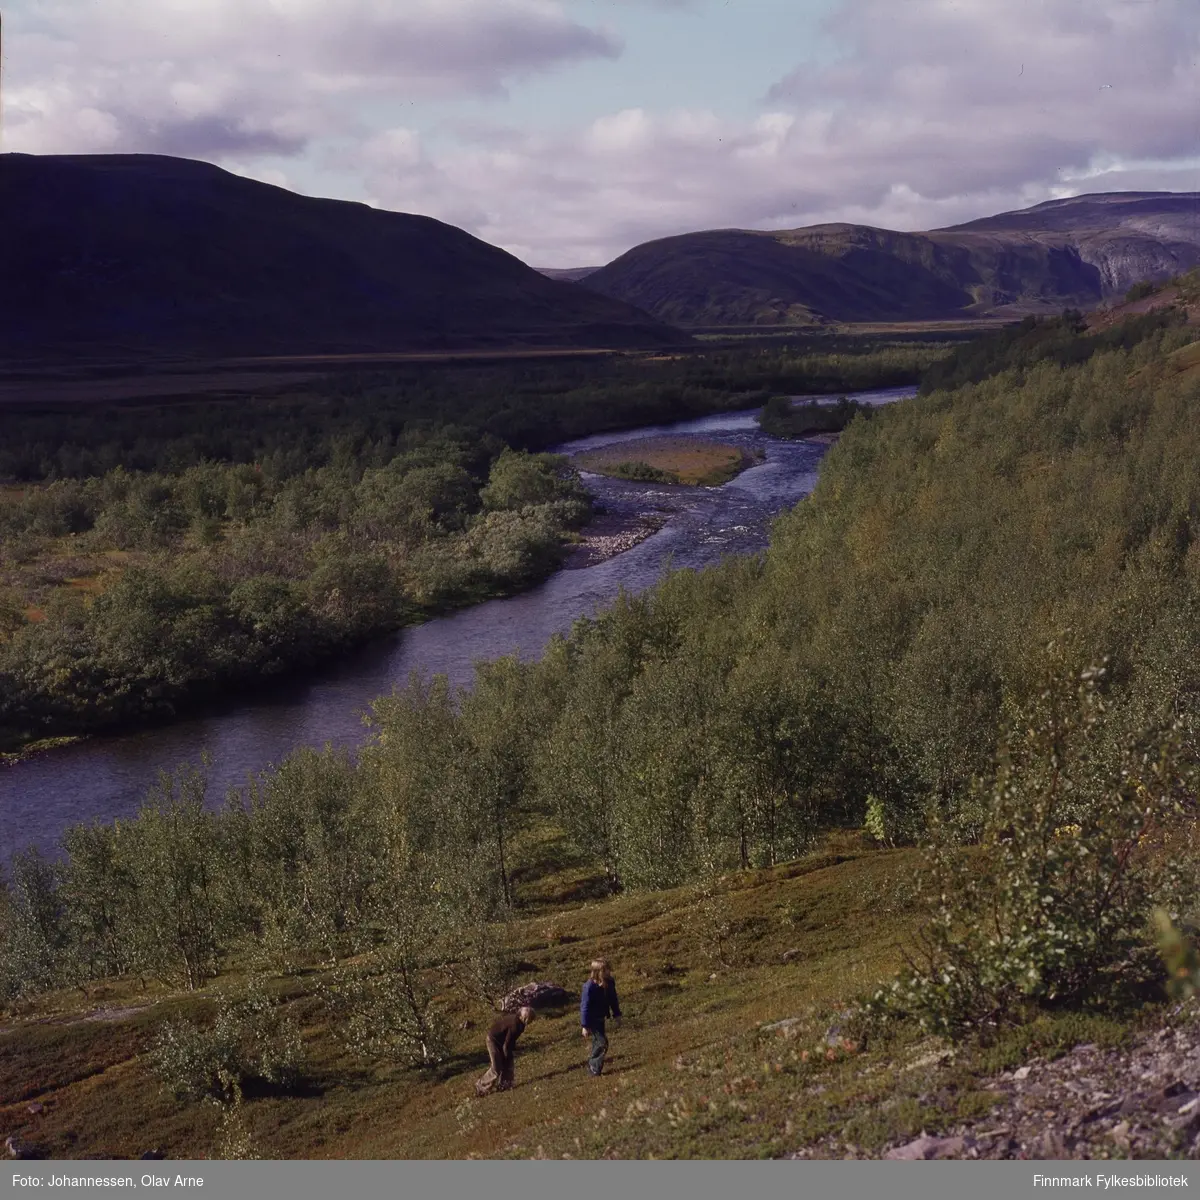 Foto av elv og skog med fjell i bakgrunnen

Muligens Syltefjordelven (Finnmark) på1970-tallet